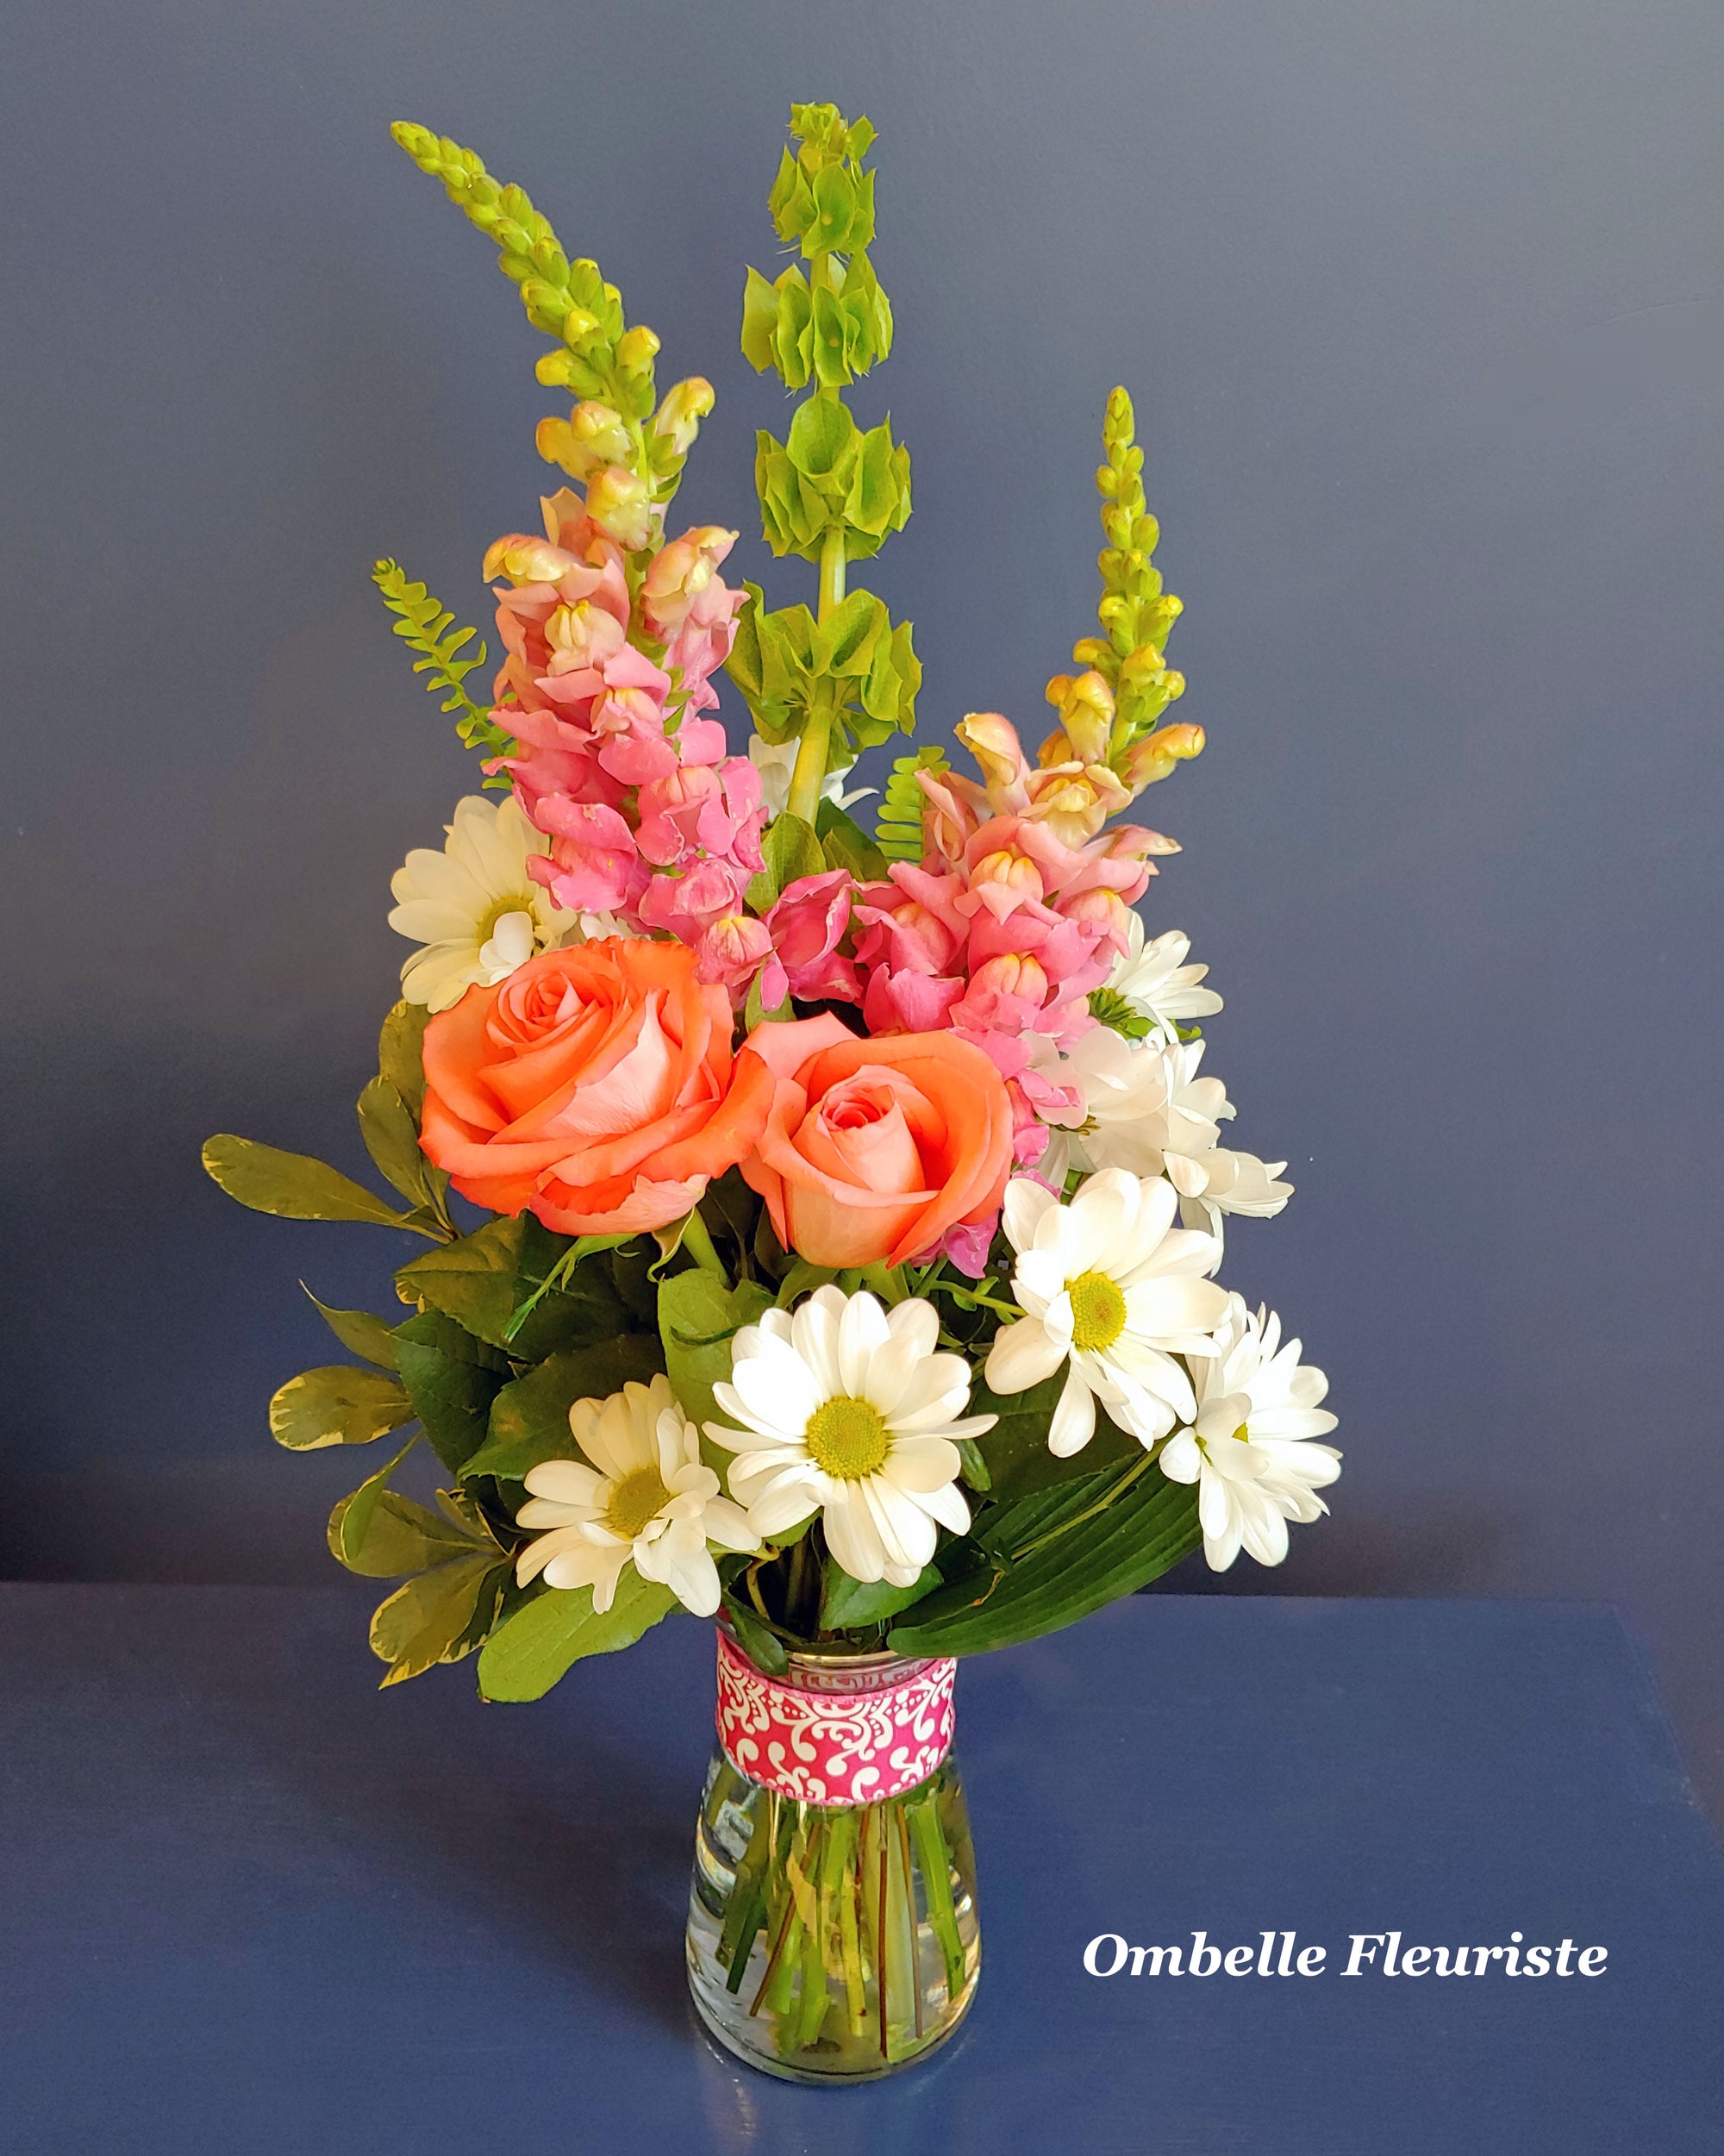 Ombelle Fleuriste - Bouquet de fleurs - Maria